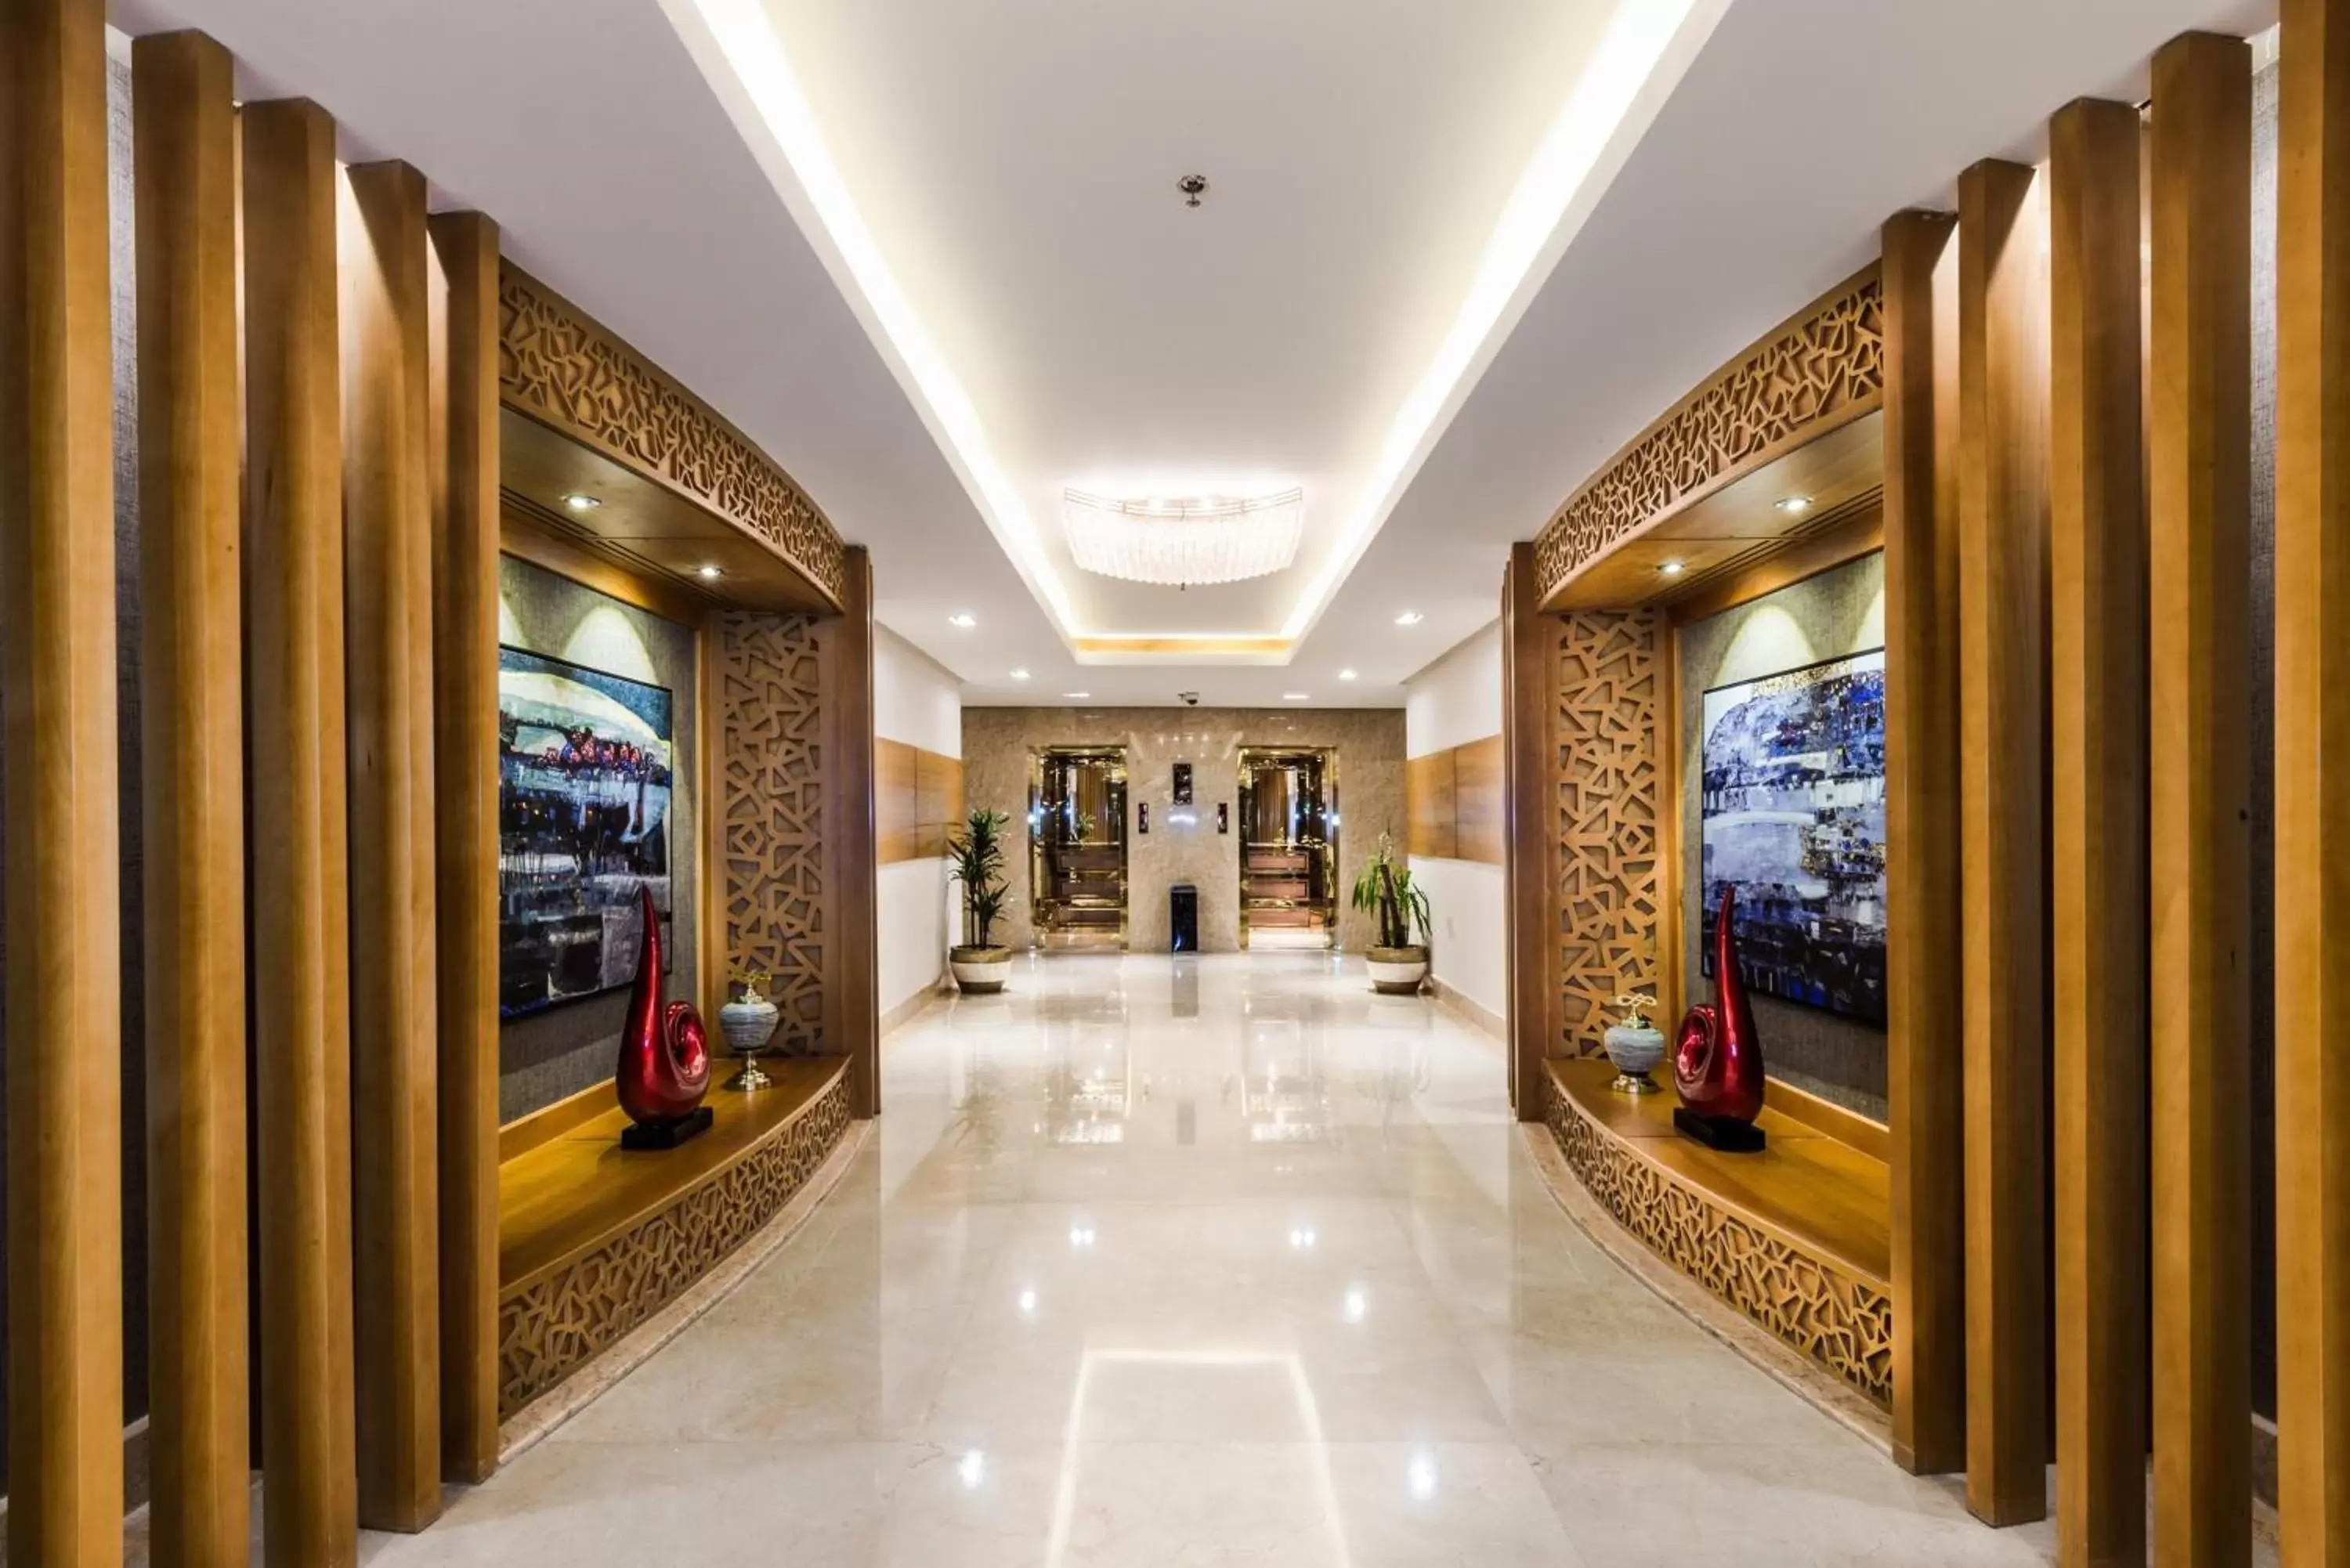 Lobby or reception in Boudl Al Munsiyah